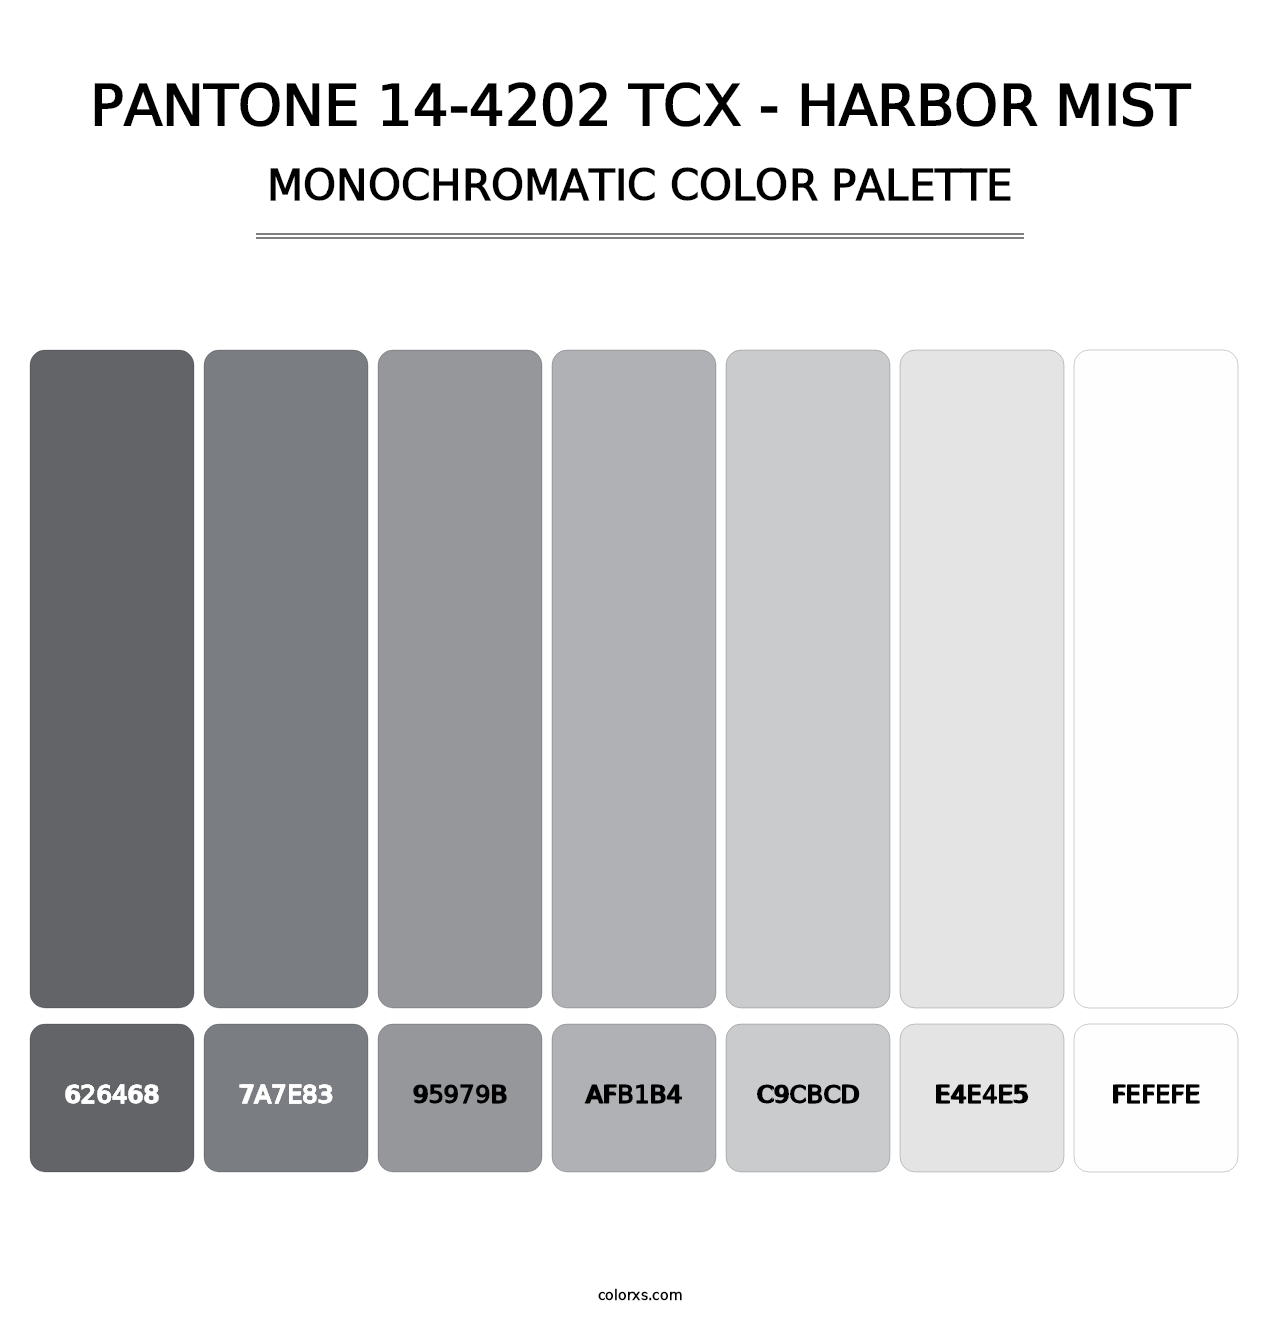 PANTONE 14-4202 TCX - Harbor Mist - Monochromatic Color Palette